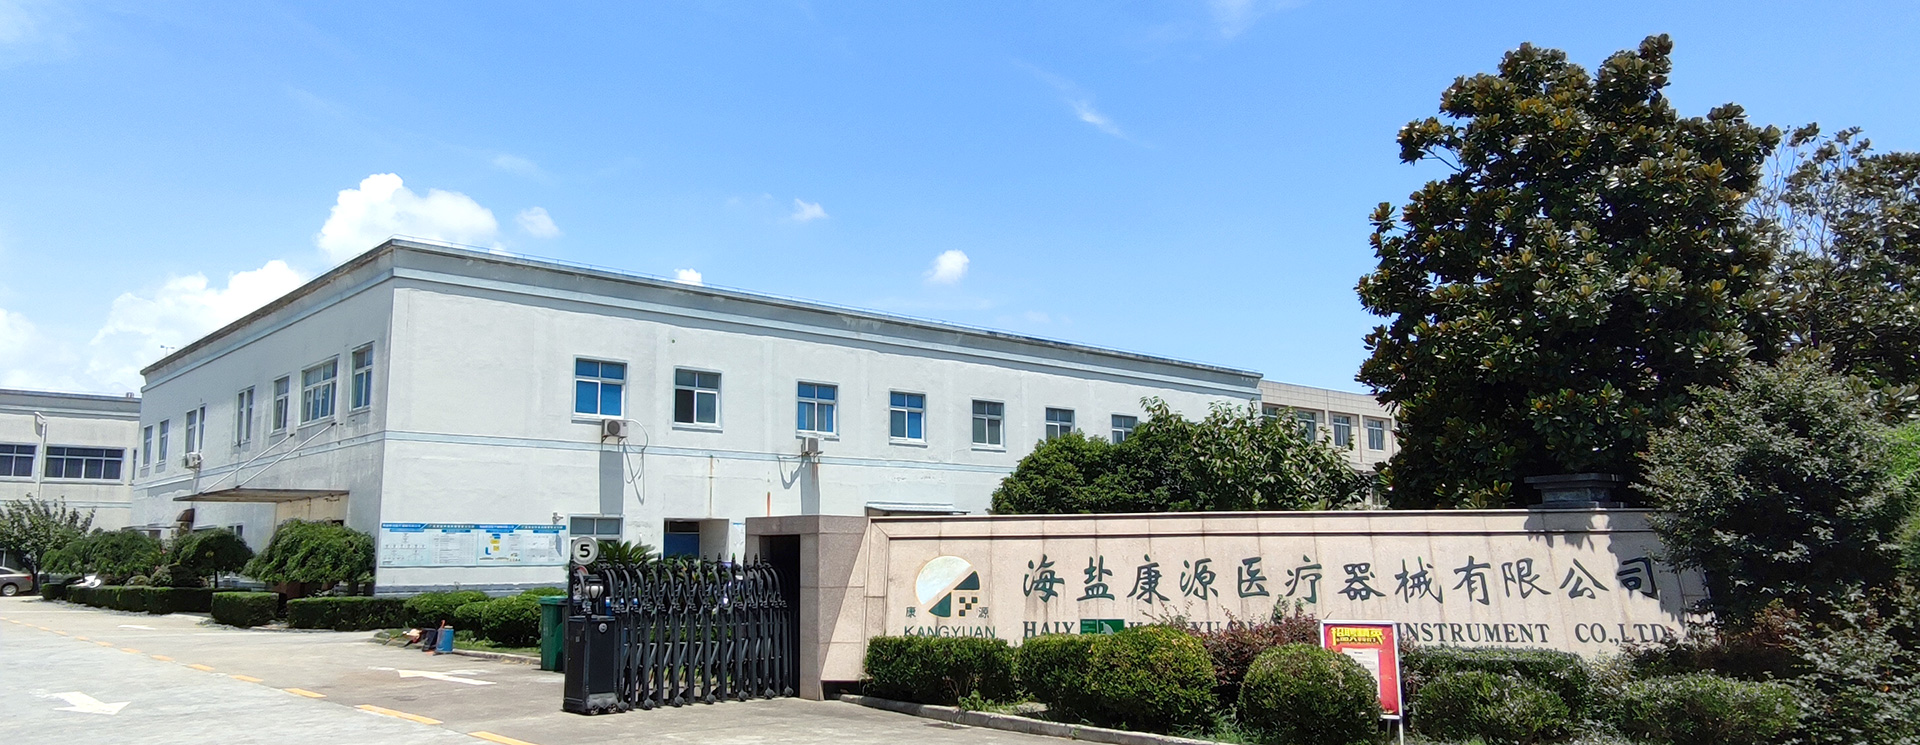 Haiyan Kangyuan Medical Instrument Co.,Ltd.